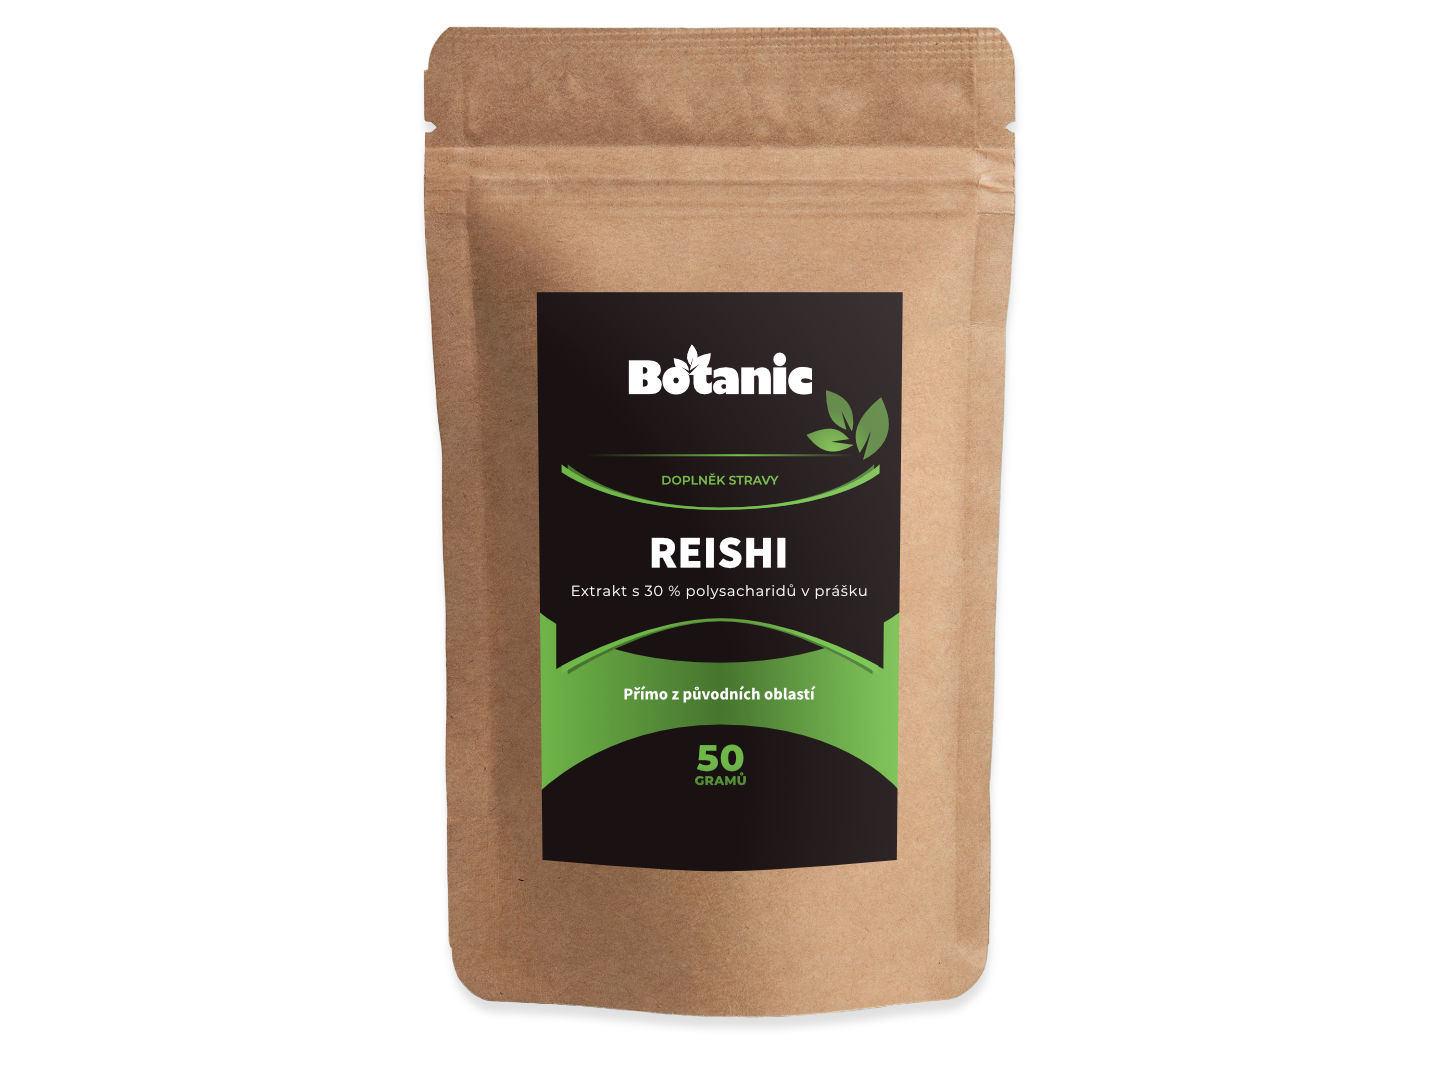 Botanic Reishi - Extrakt s 30 % polysacharidů v prášku 50g